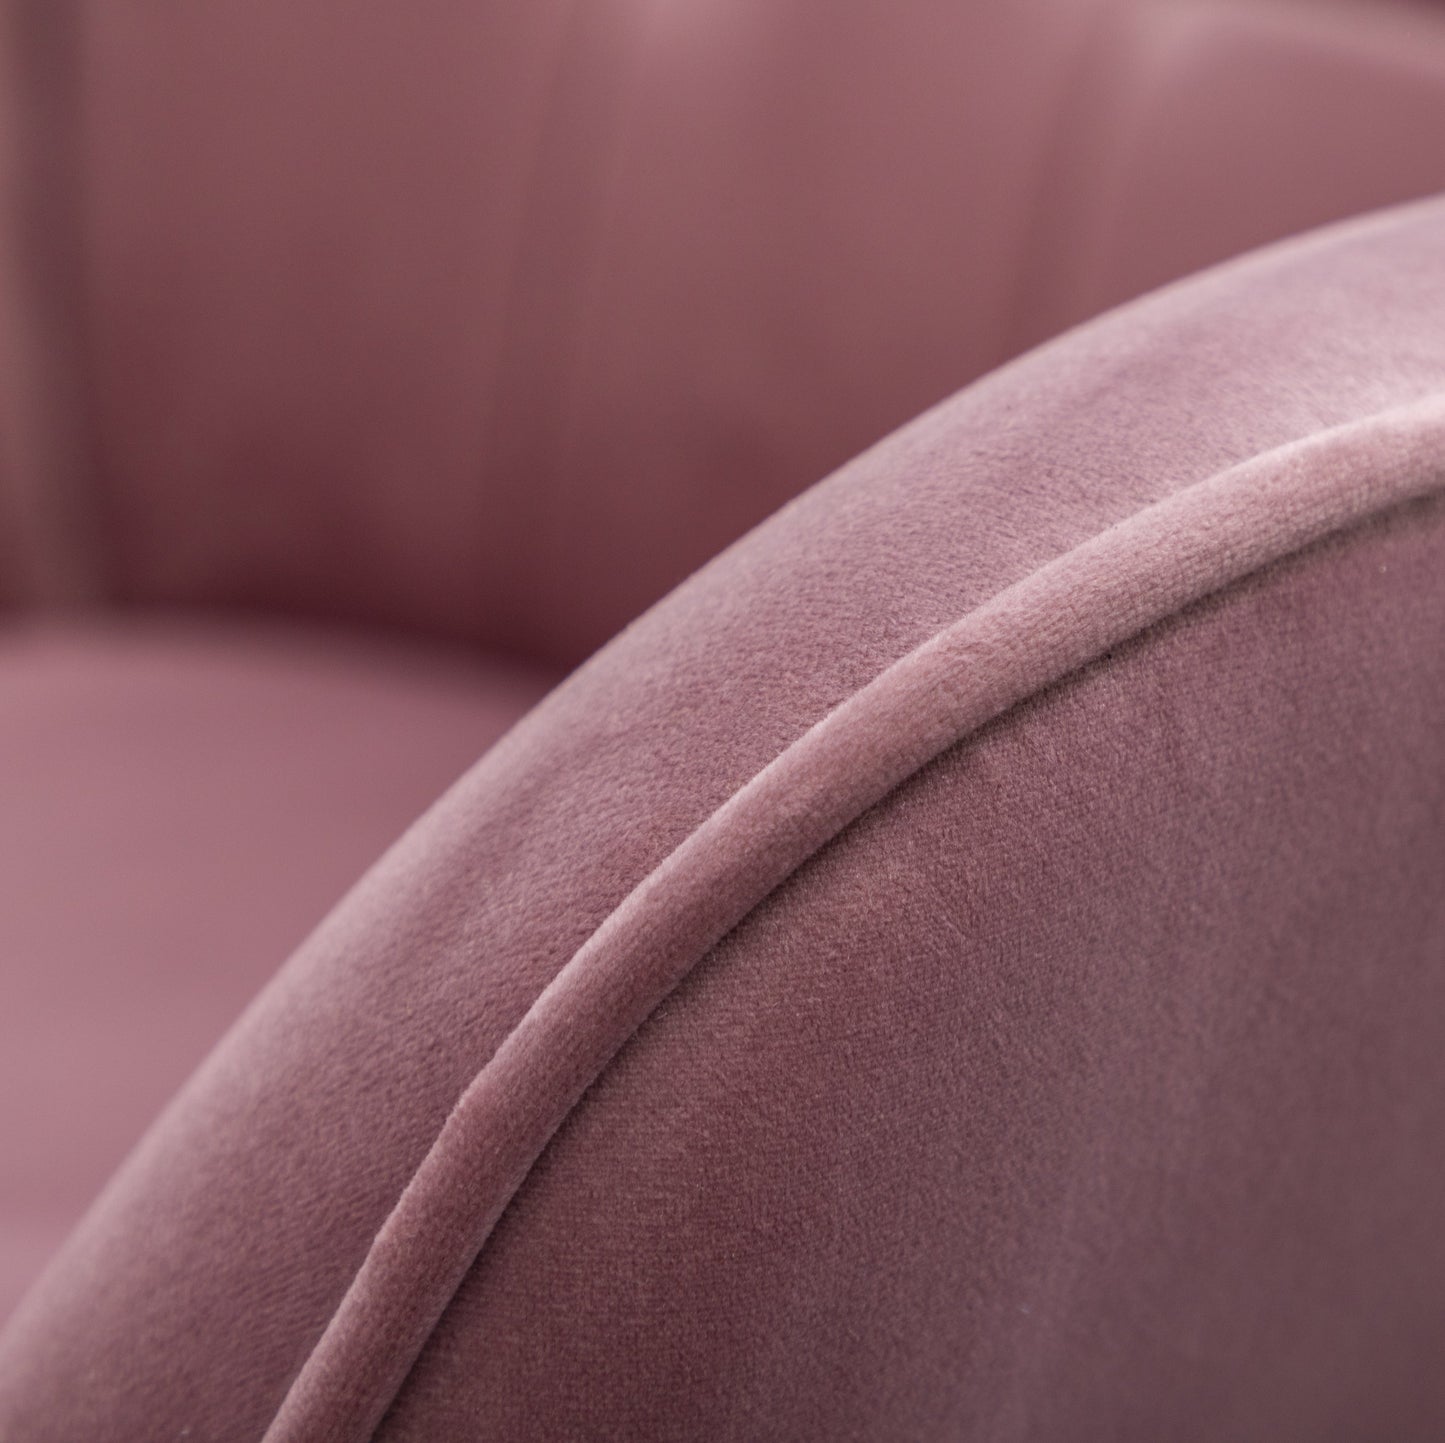 Leiria Contemporary Silky Velvet Tufted Accent Chair with Ottoman, Mauve